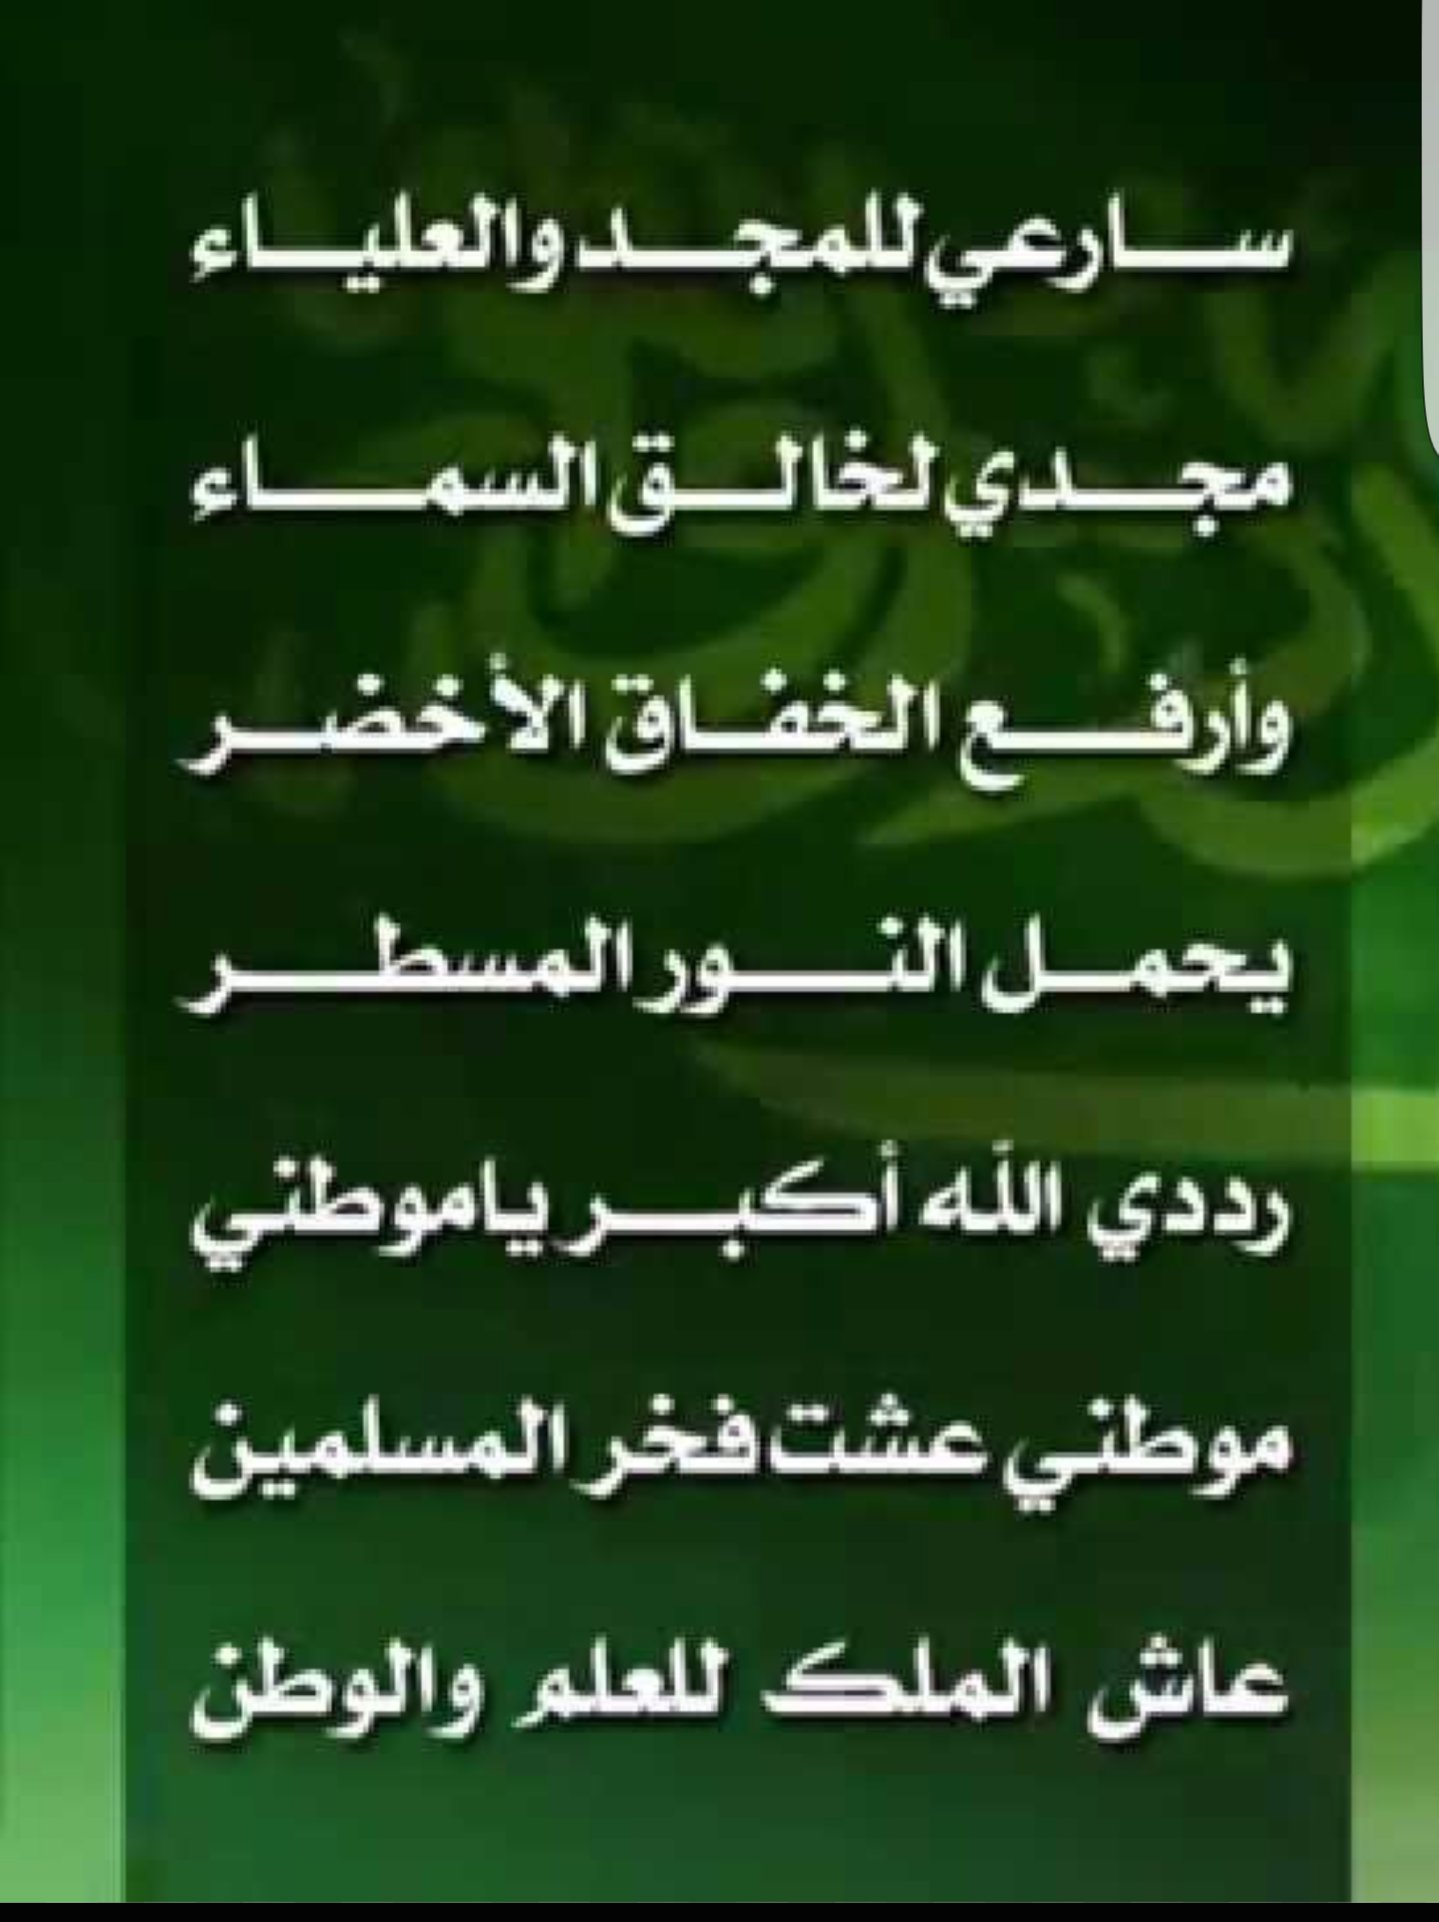 كلمات نشيد الوطني السعودي كلمات النشيد